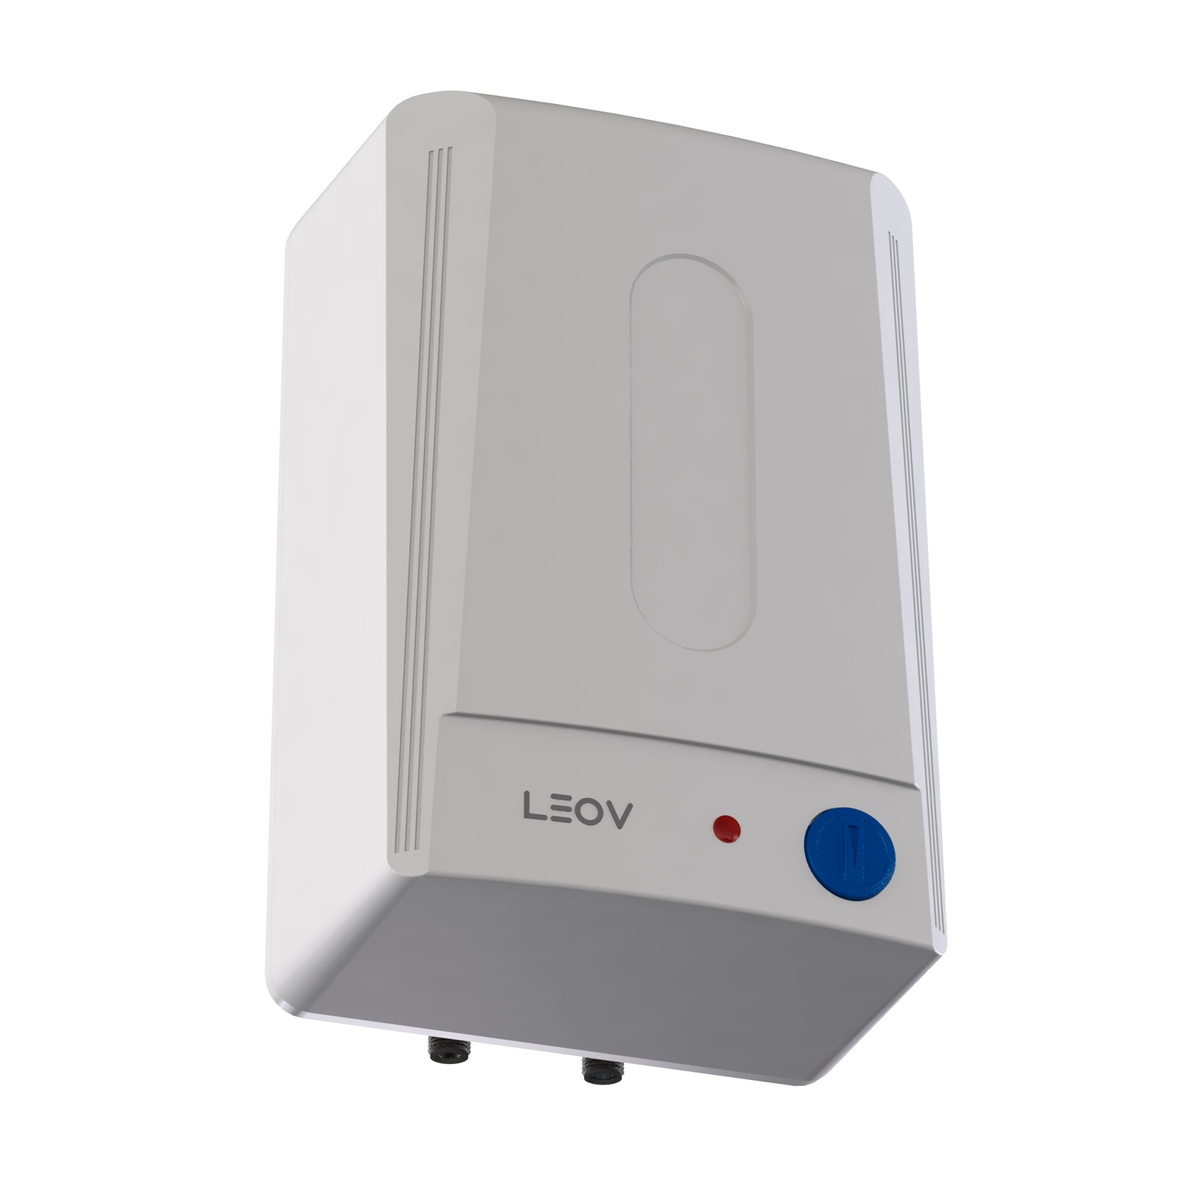 Бойлер електричний компактний міні 10л LEOV LUB Small мокрий тен 1.5кВт 435x290x295мм 000019700